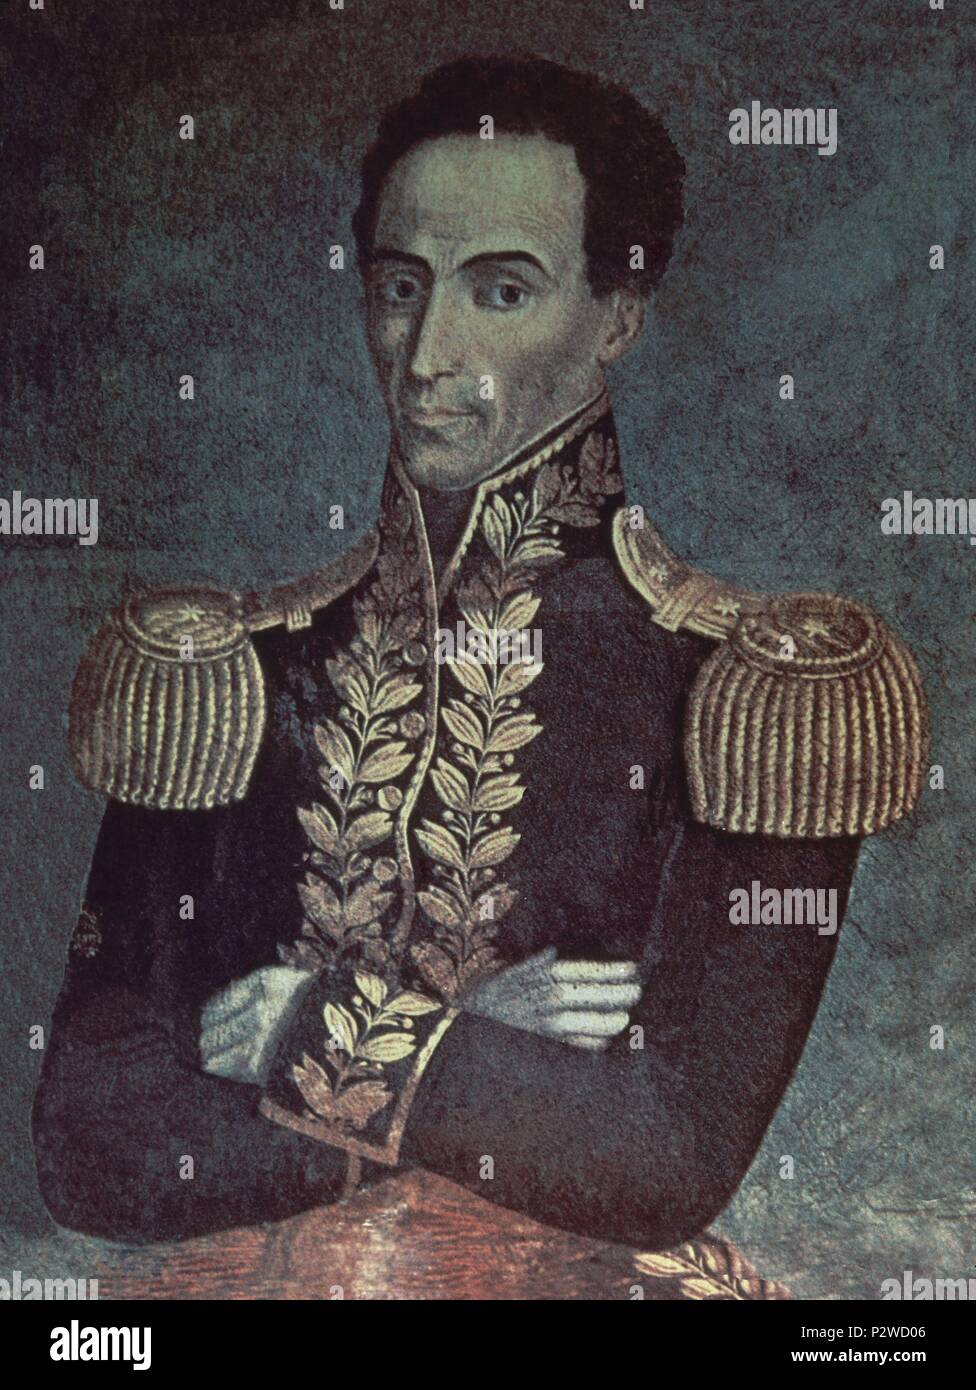 Portrait von Simon Bolivar (1783-1830), General und Politiker aus Südamerika. Madrid, Institut für Lateinamerikanische Zusammenarbeit. Ort: INSTITUTO DE COOPERACION IBEROAMERICANA, MADRID, SPANIEN. Stockfoto